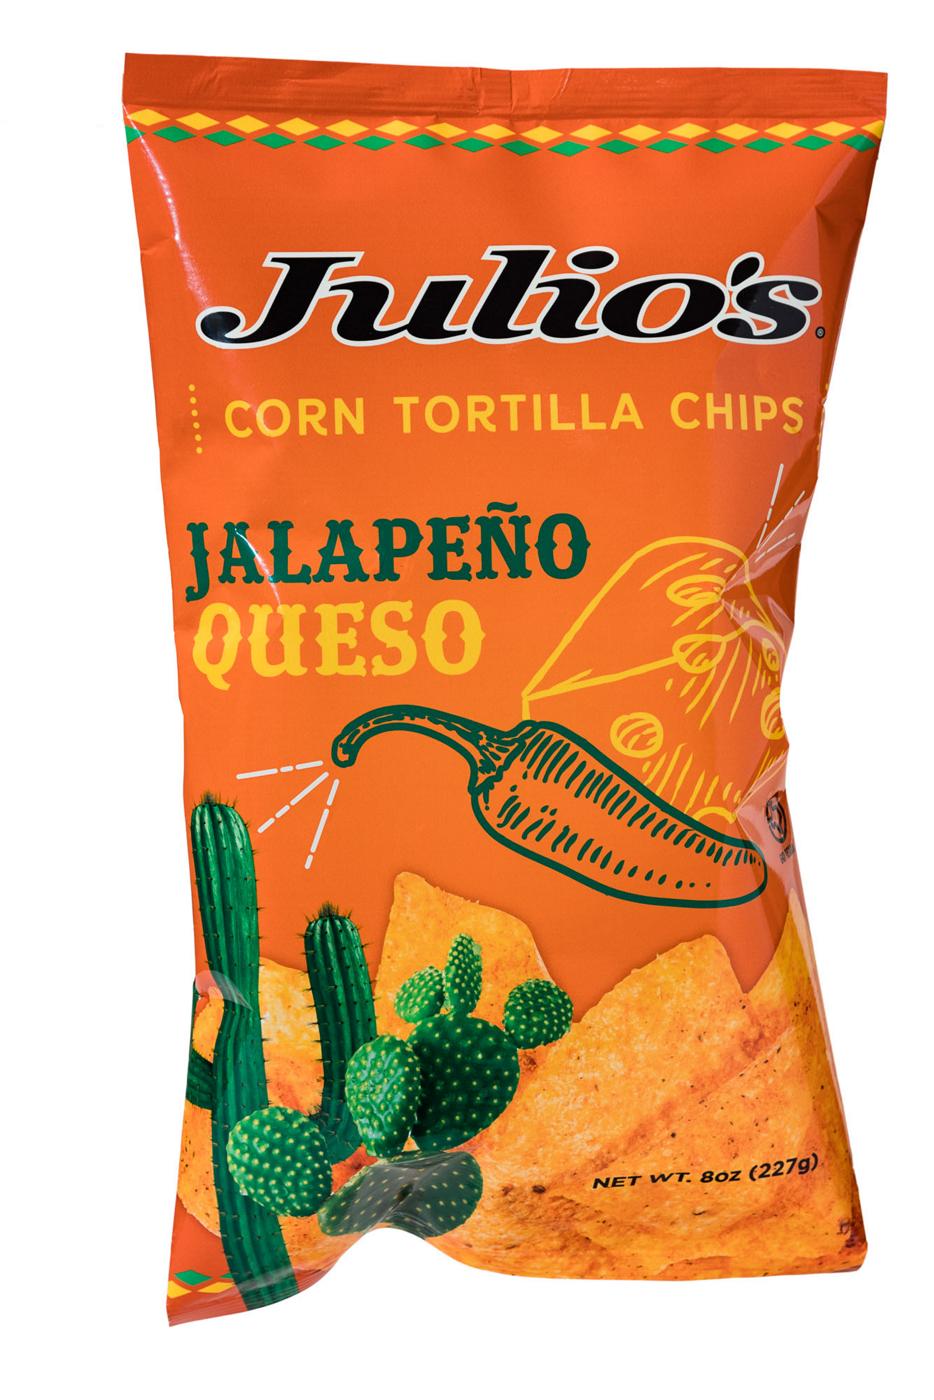 Julio's Freakin Hot Corn Tortilla Chips